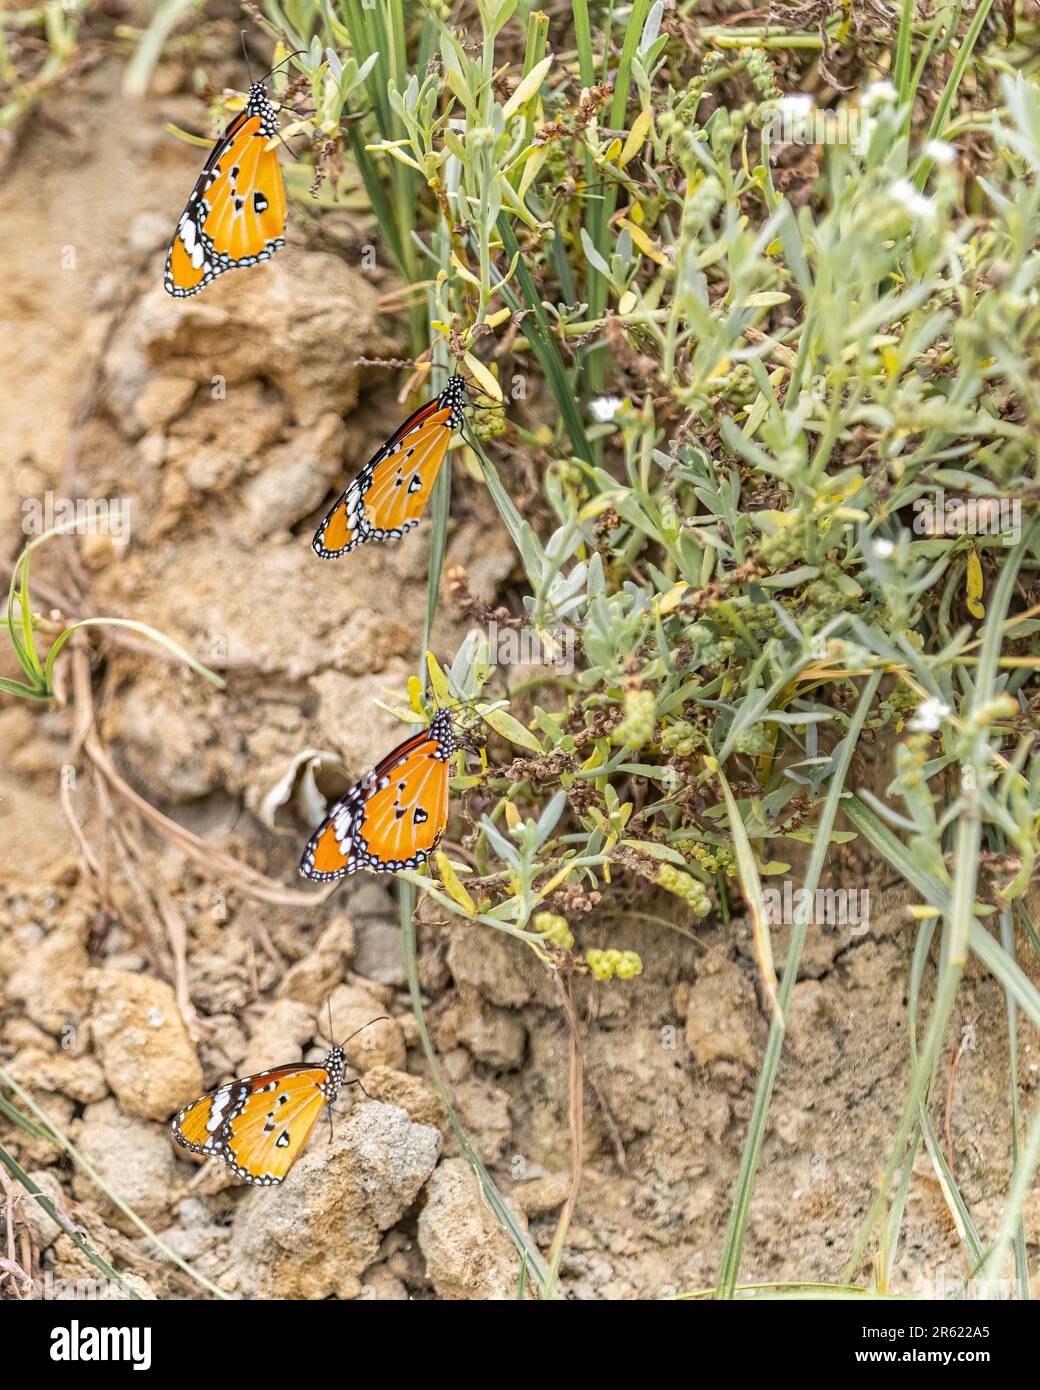 Una serie di farfalle sono scagliate sul terreno di un paesaggio roccioso, i loro colori vibranti attirano l'attenzione sulla bellezza della natura Foto Stock